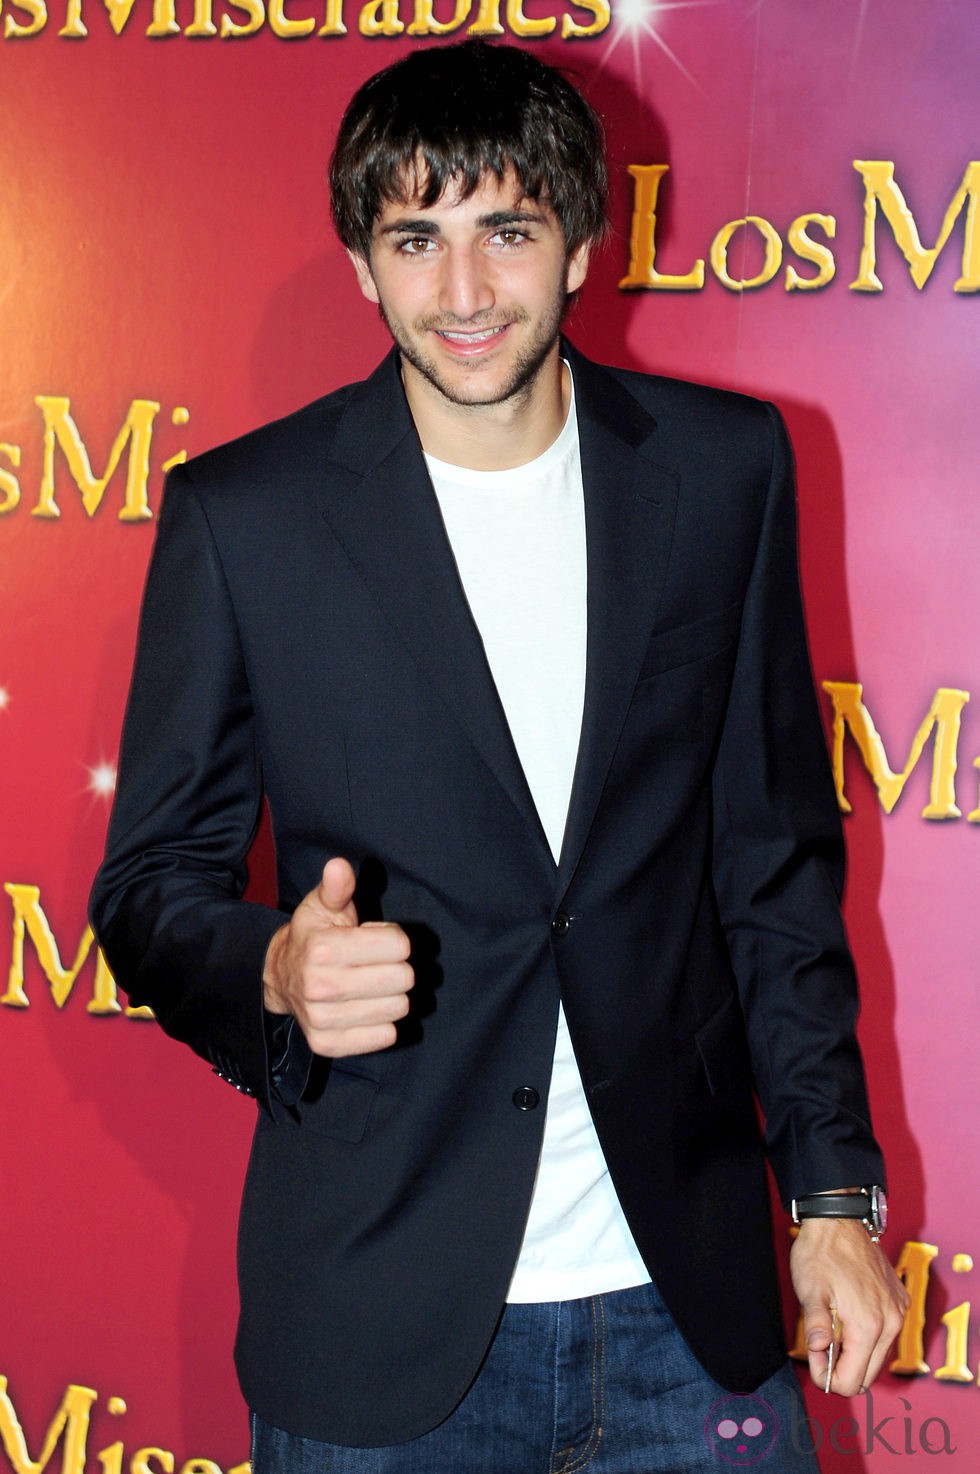 Ricky Rubio en el estreno de 'Los Miserables' en Barcelona